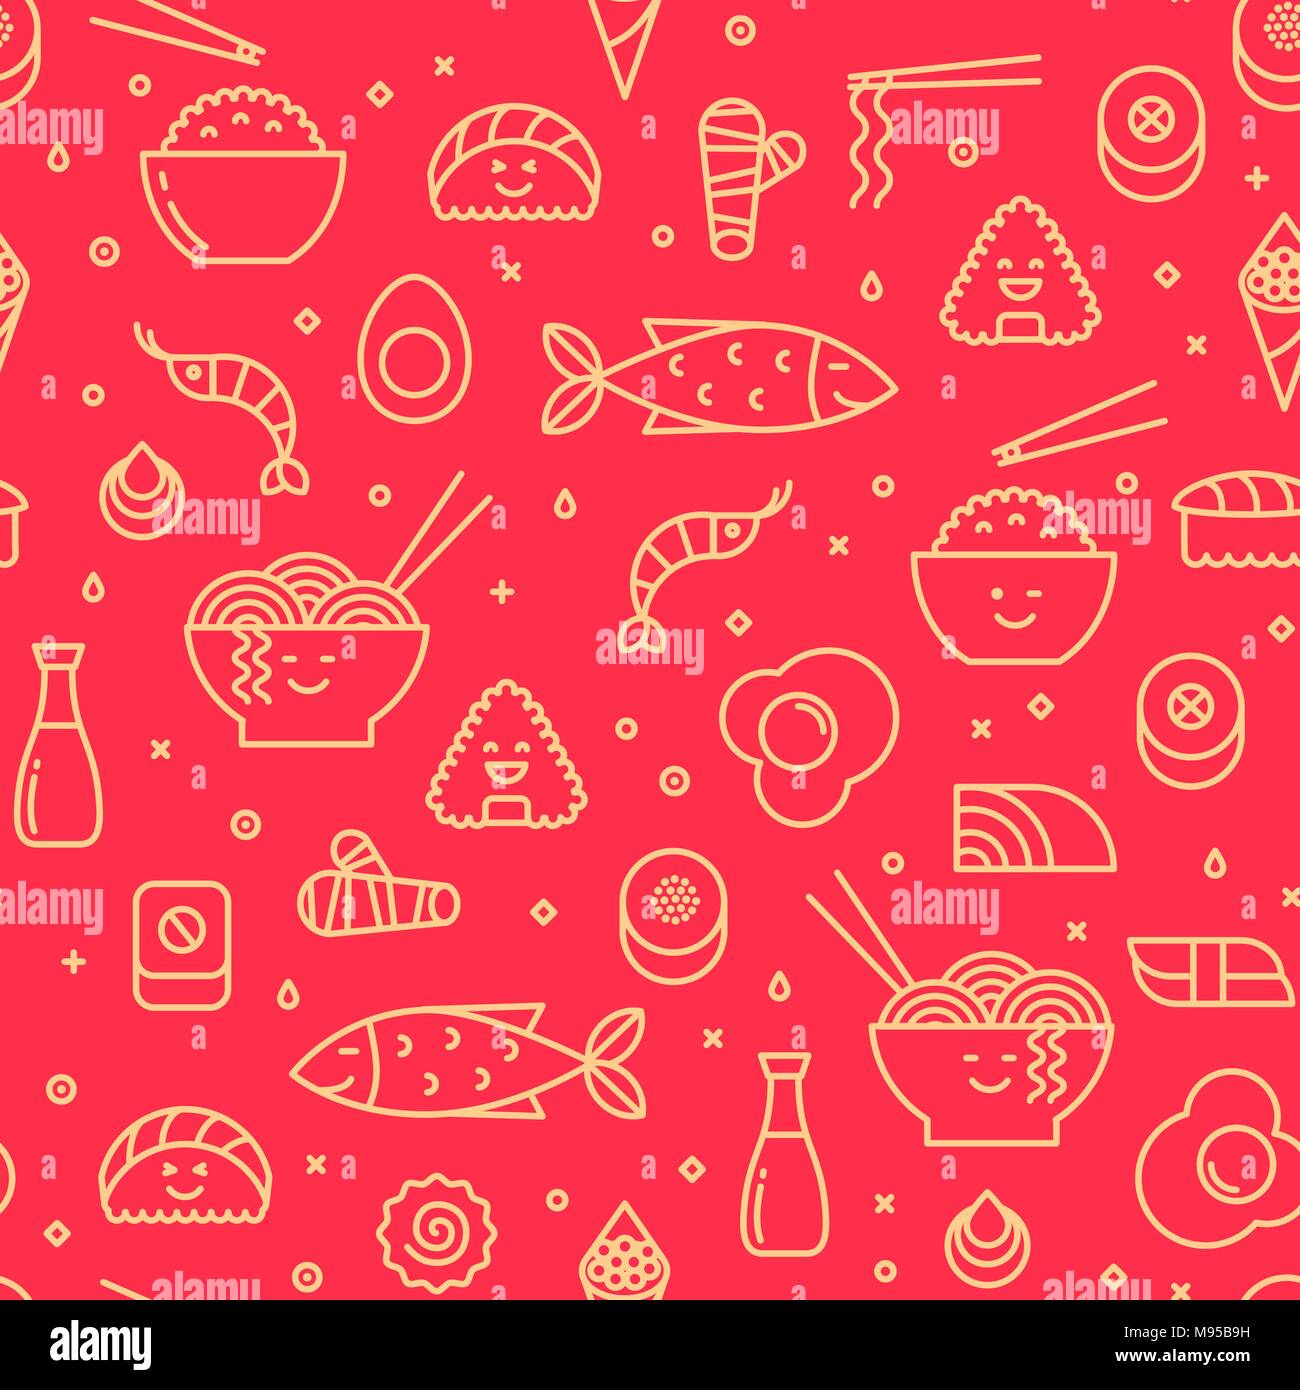 Vecteur de plaisir avec motif transparent alimentaire japonais comme les sushis, riz, pains, poissons. Les couleurs rouge et jaune. Smiling faces, style iconique, dessin au trait. Illustration de Vecteur